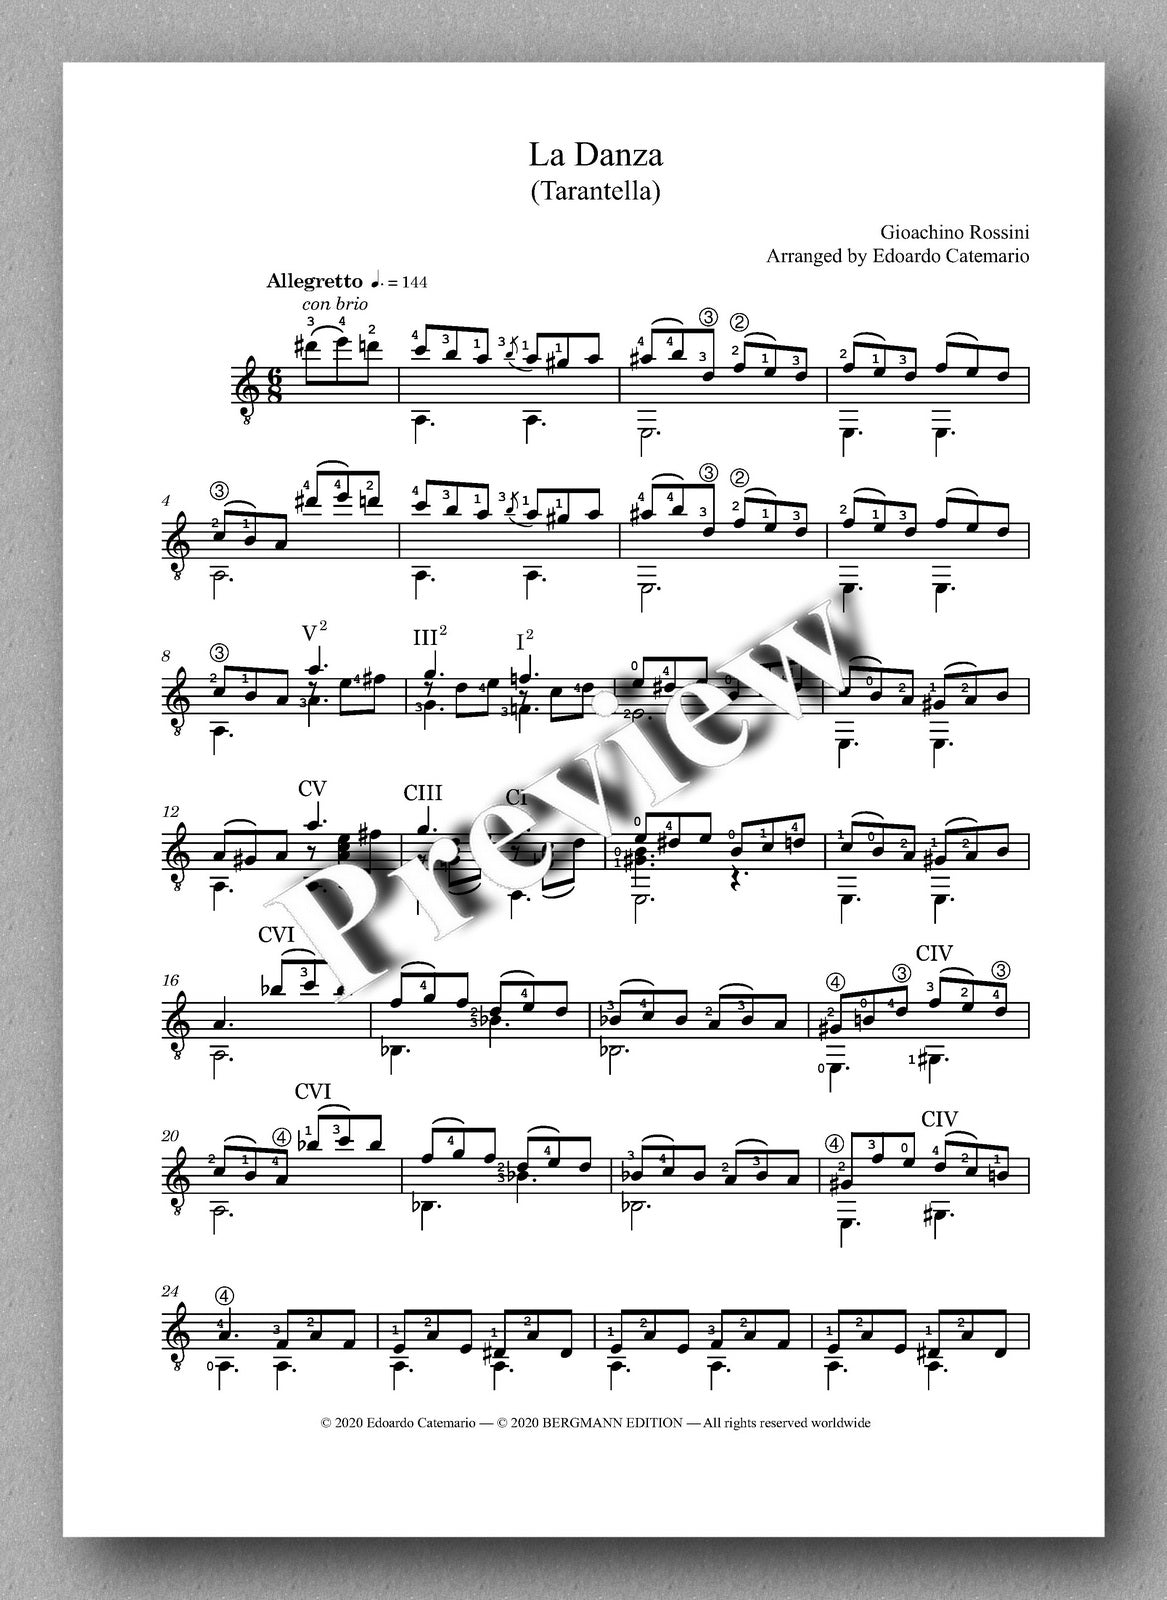 Gioachino Rossini, La Danza - preview of the music score 1